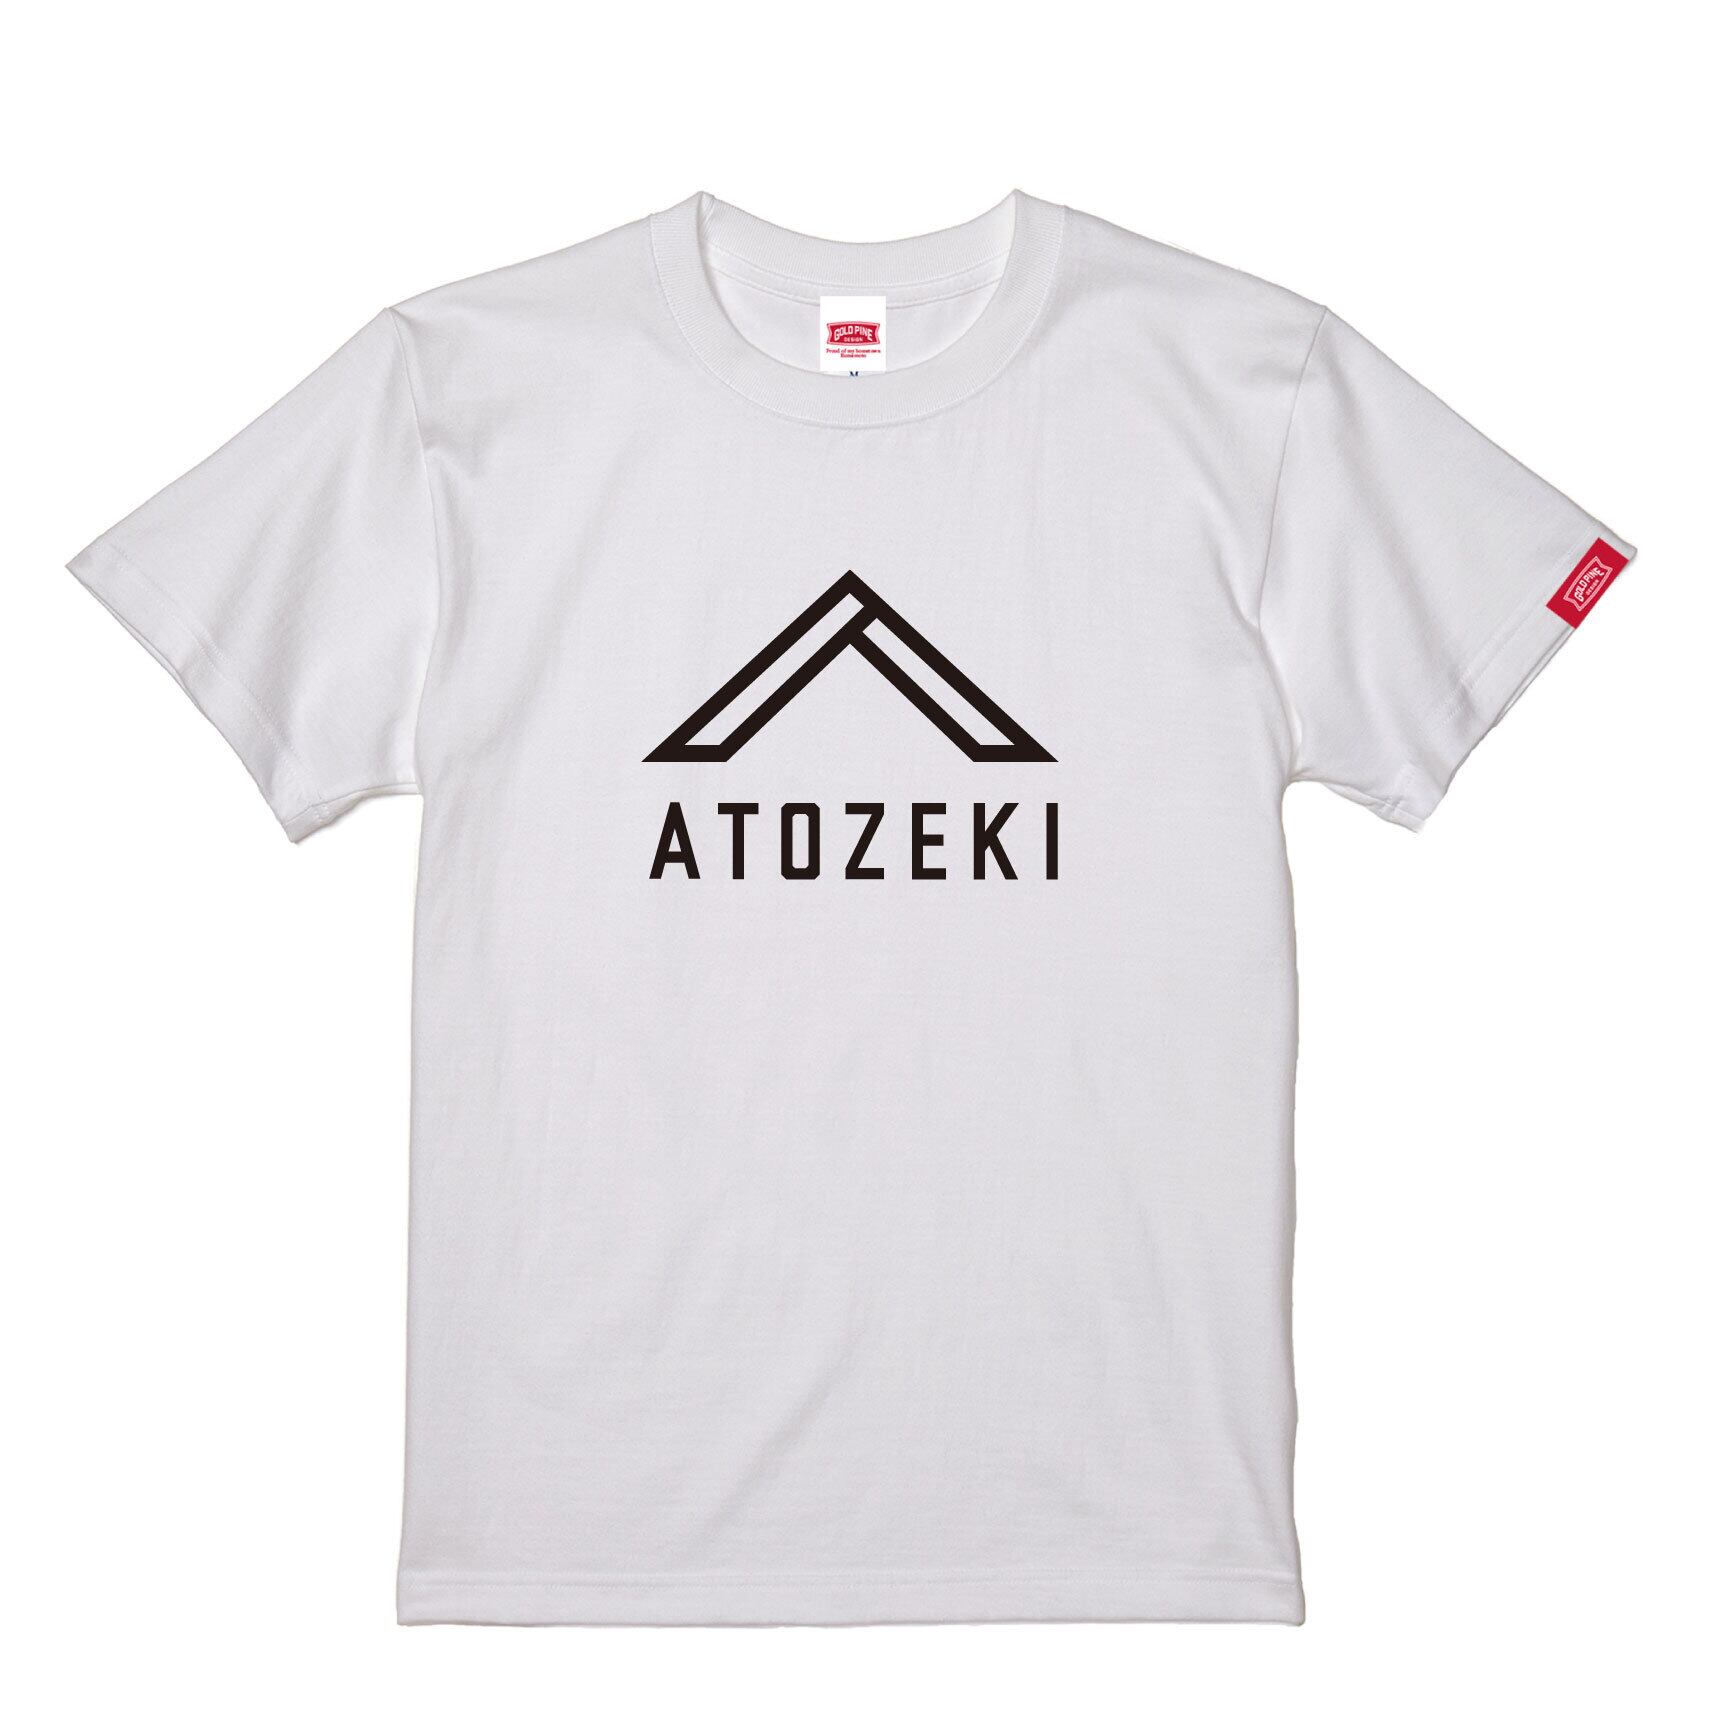 ATOZEKI-Tshirt【Adult】White